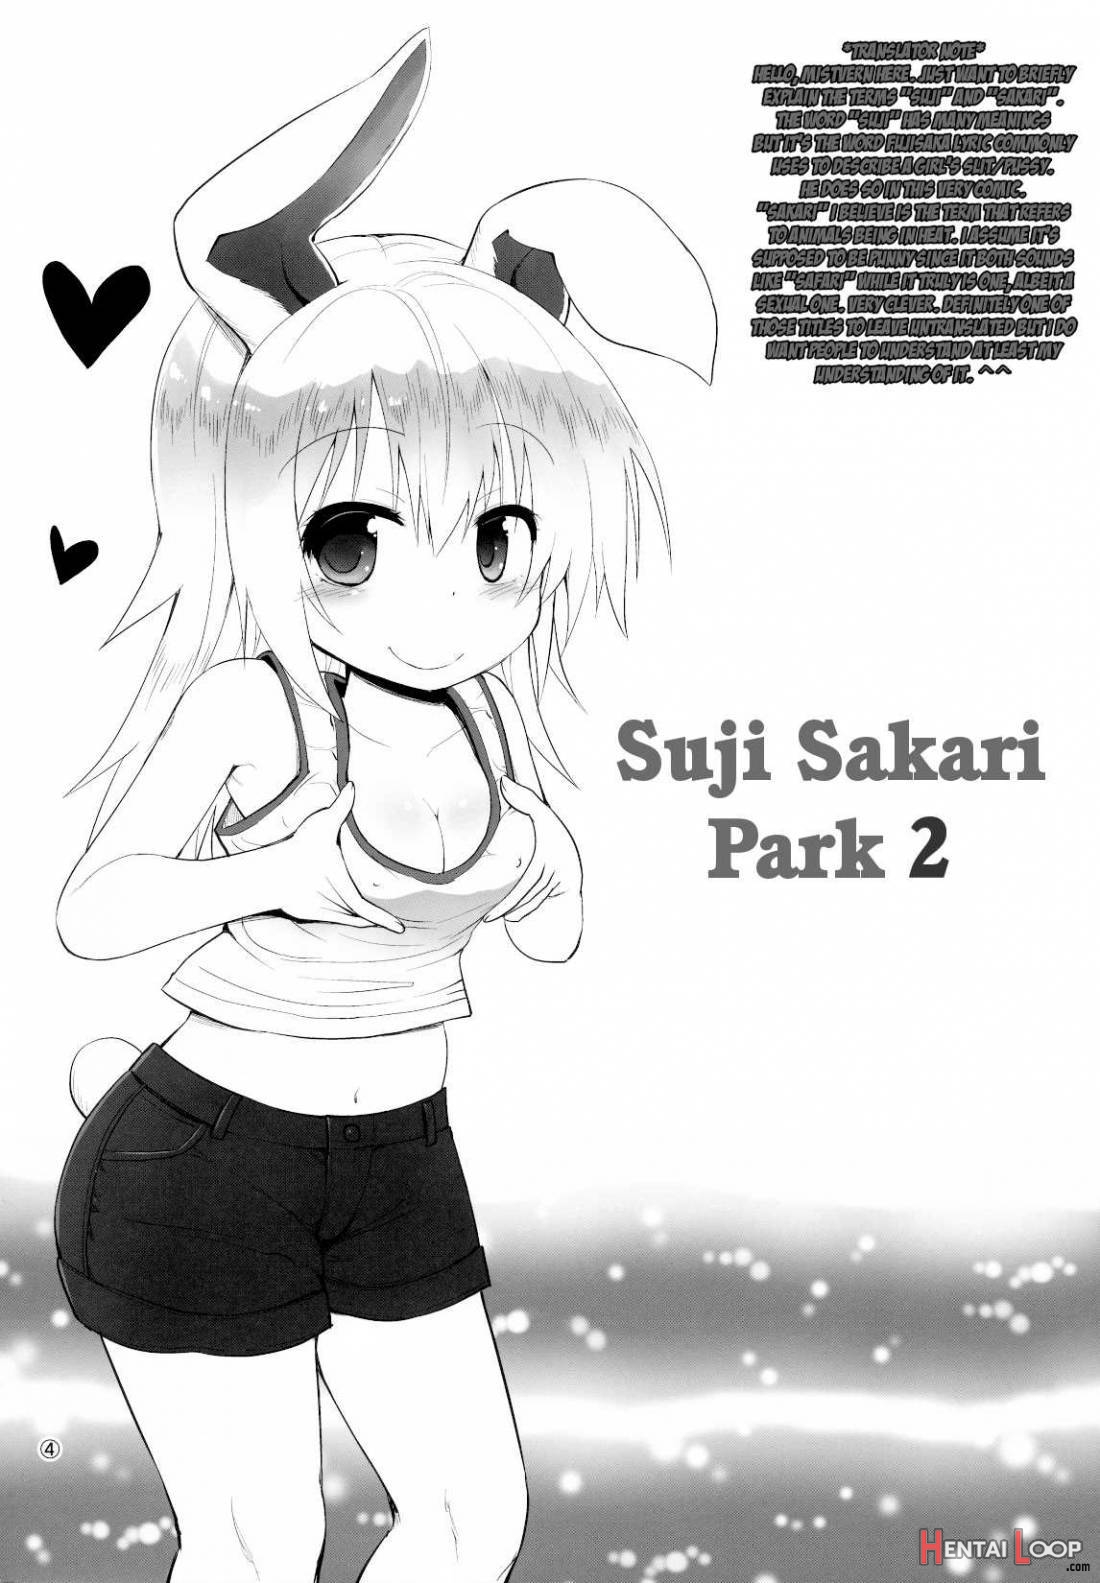 Suji Sakari Park 2 page 2